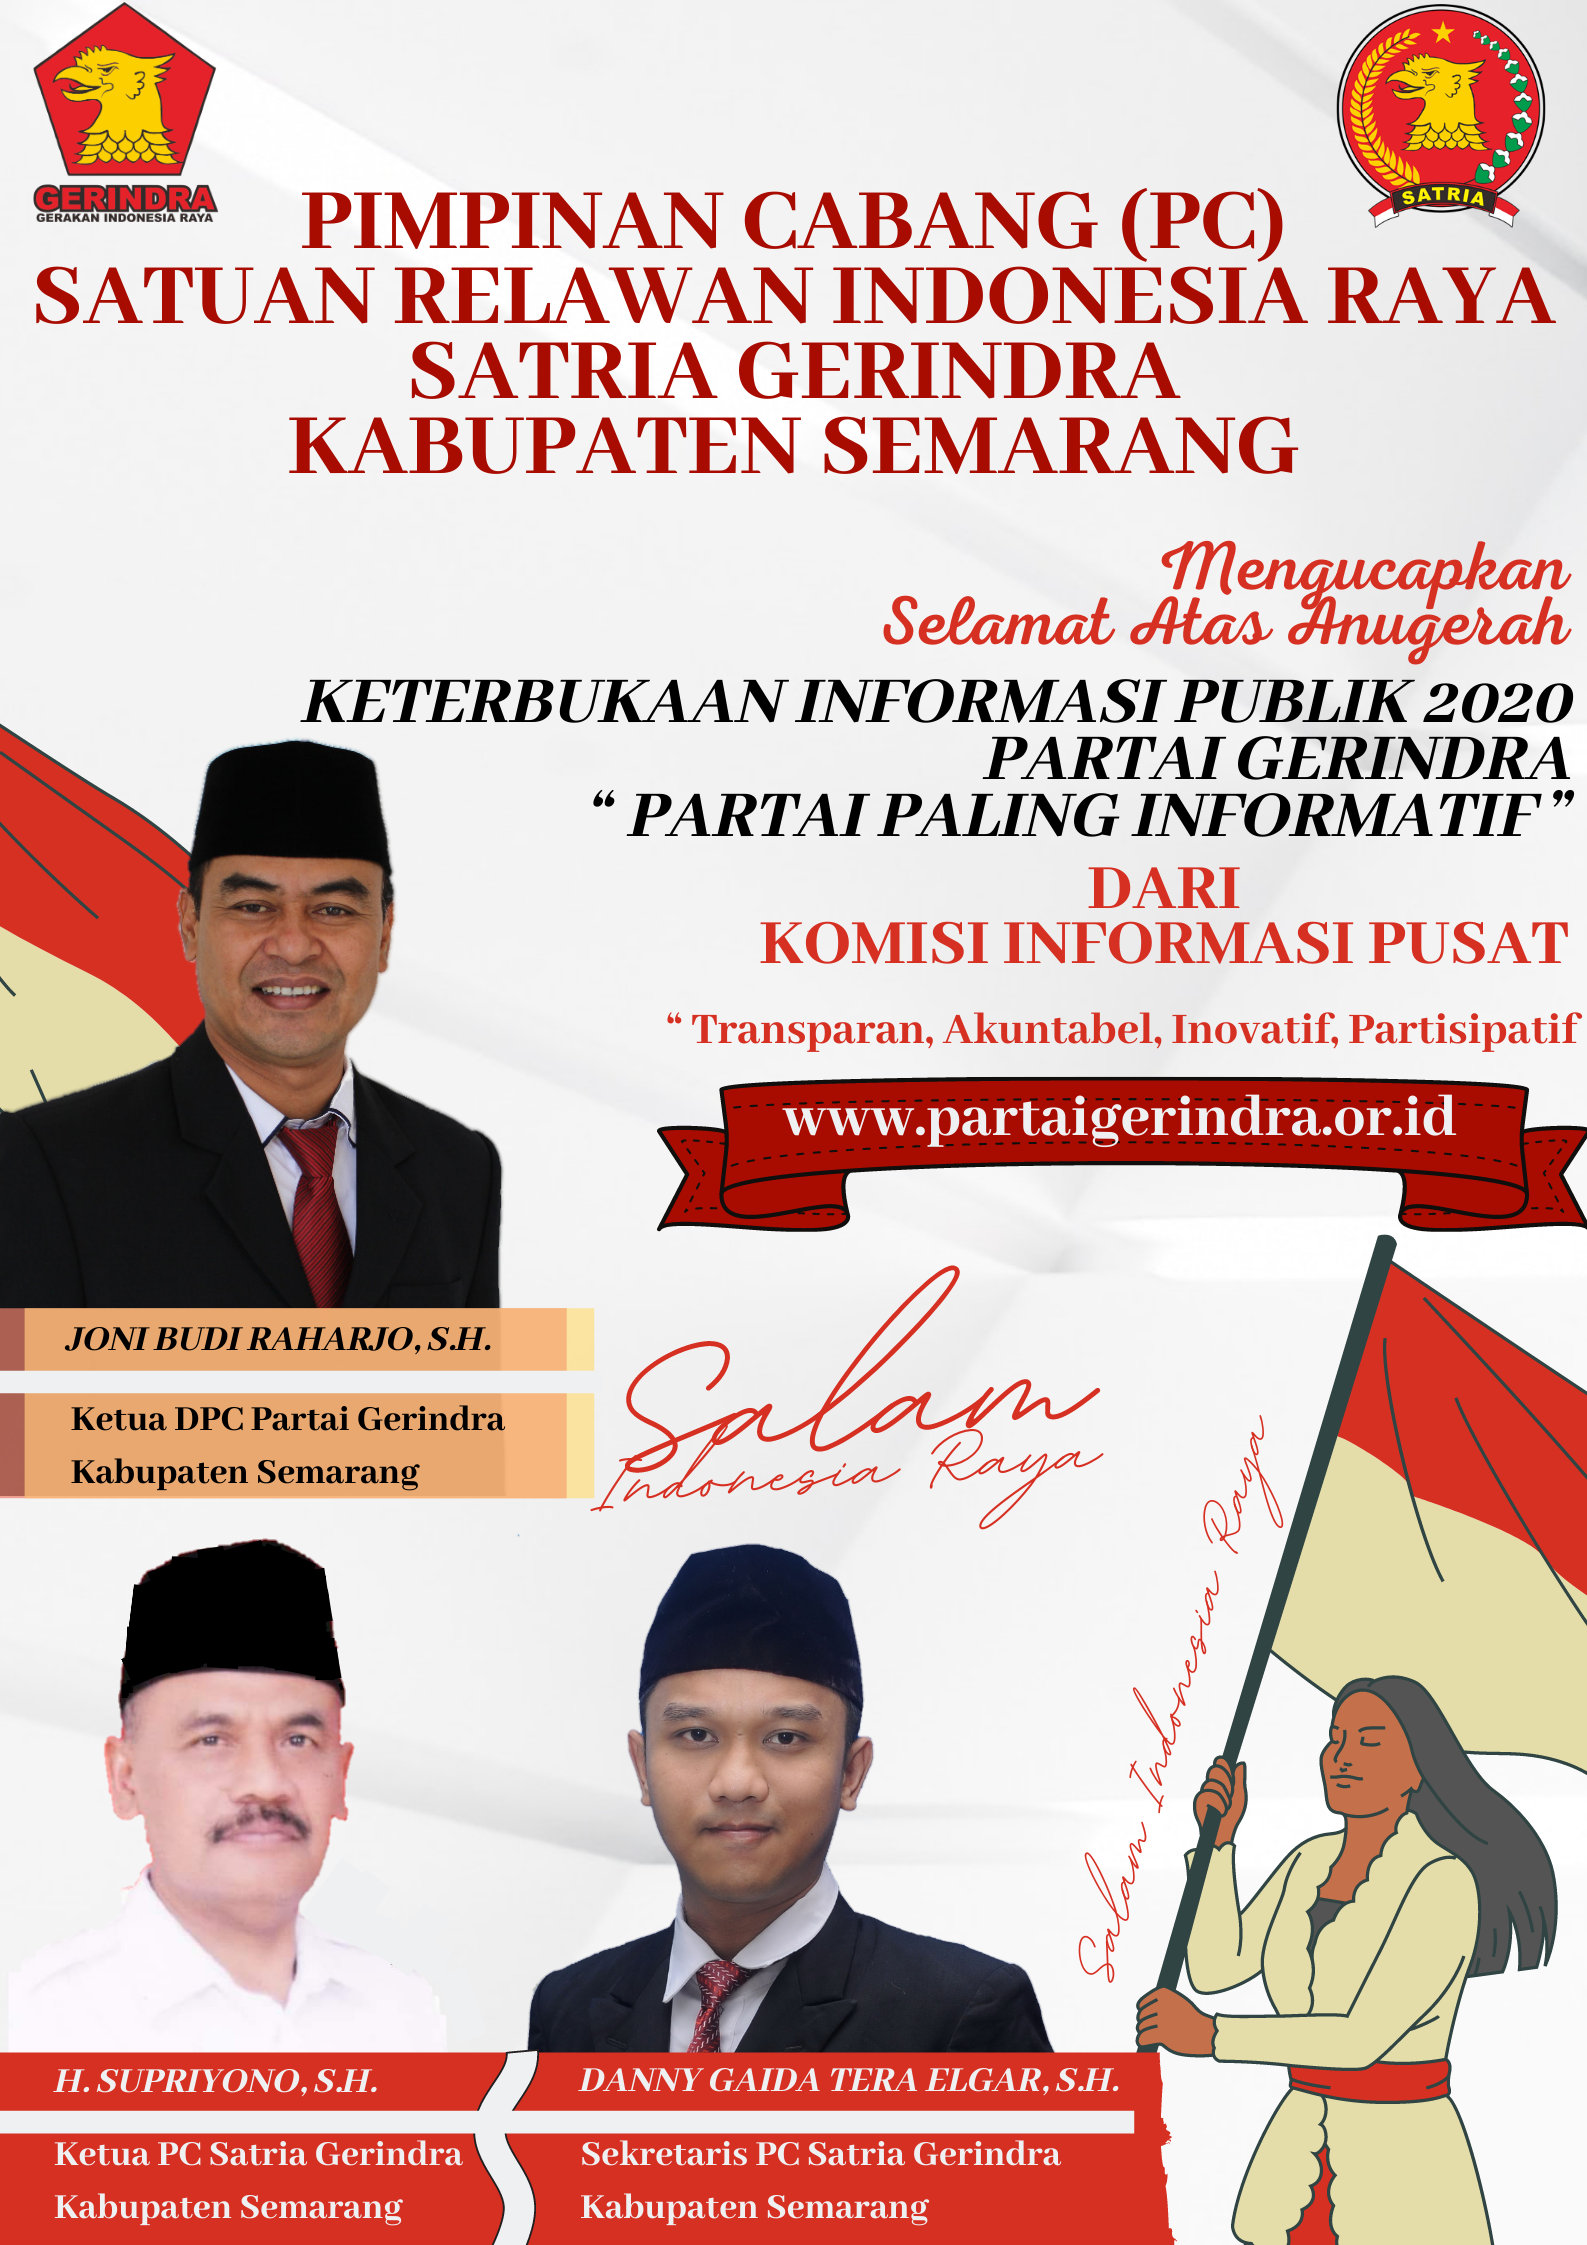 Pengurus Pimpinan Cabang (PC) Satuan Relawan Indonesia Raya (SATRIA) Partai Gerindra Kabupaten Semarang Jawa Tengah Indonesia